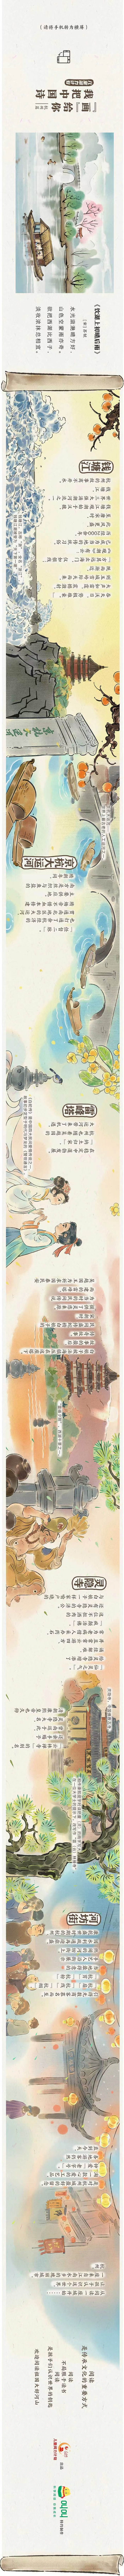 儿童阅力计划 | 我把中国诗“画”给你――阅读杭州